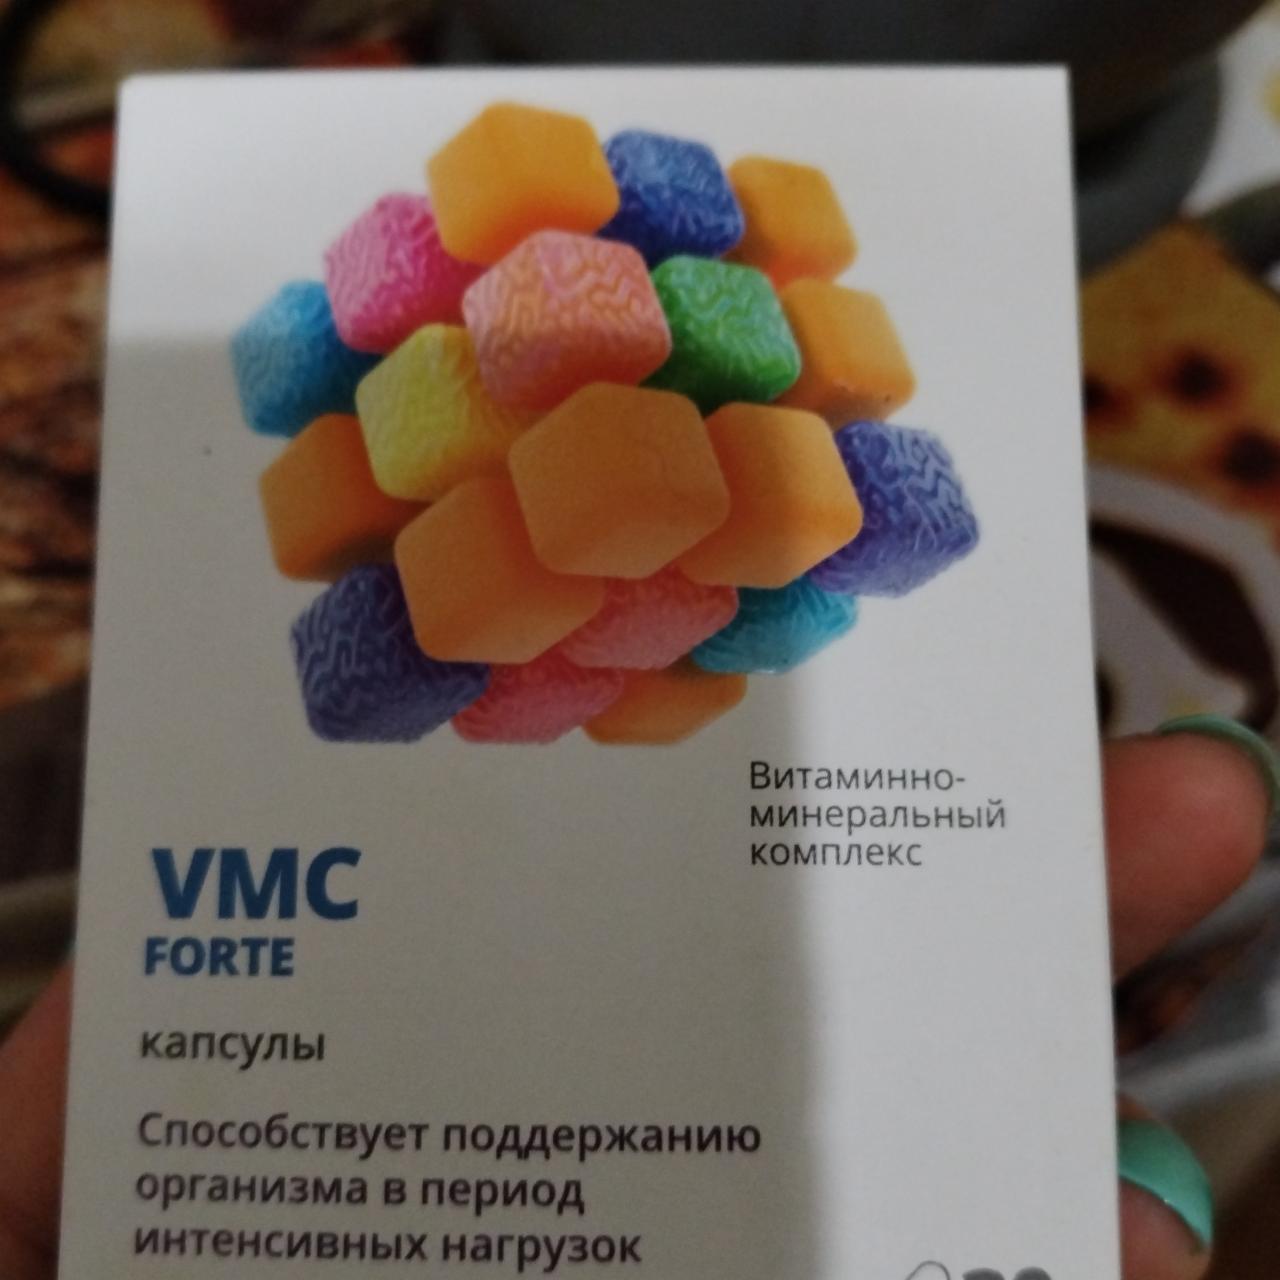 Фото - витаминно-минеральный комплекс VMC FORTE